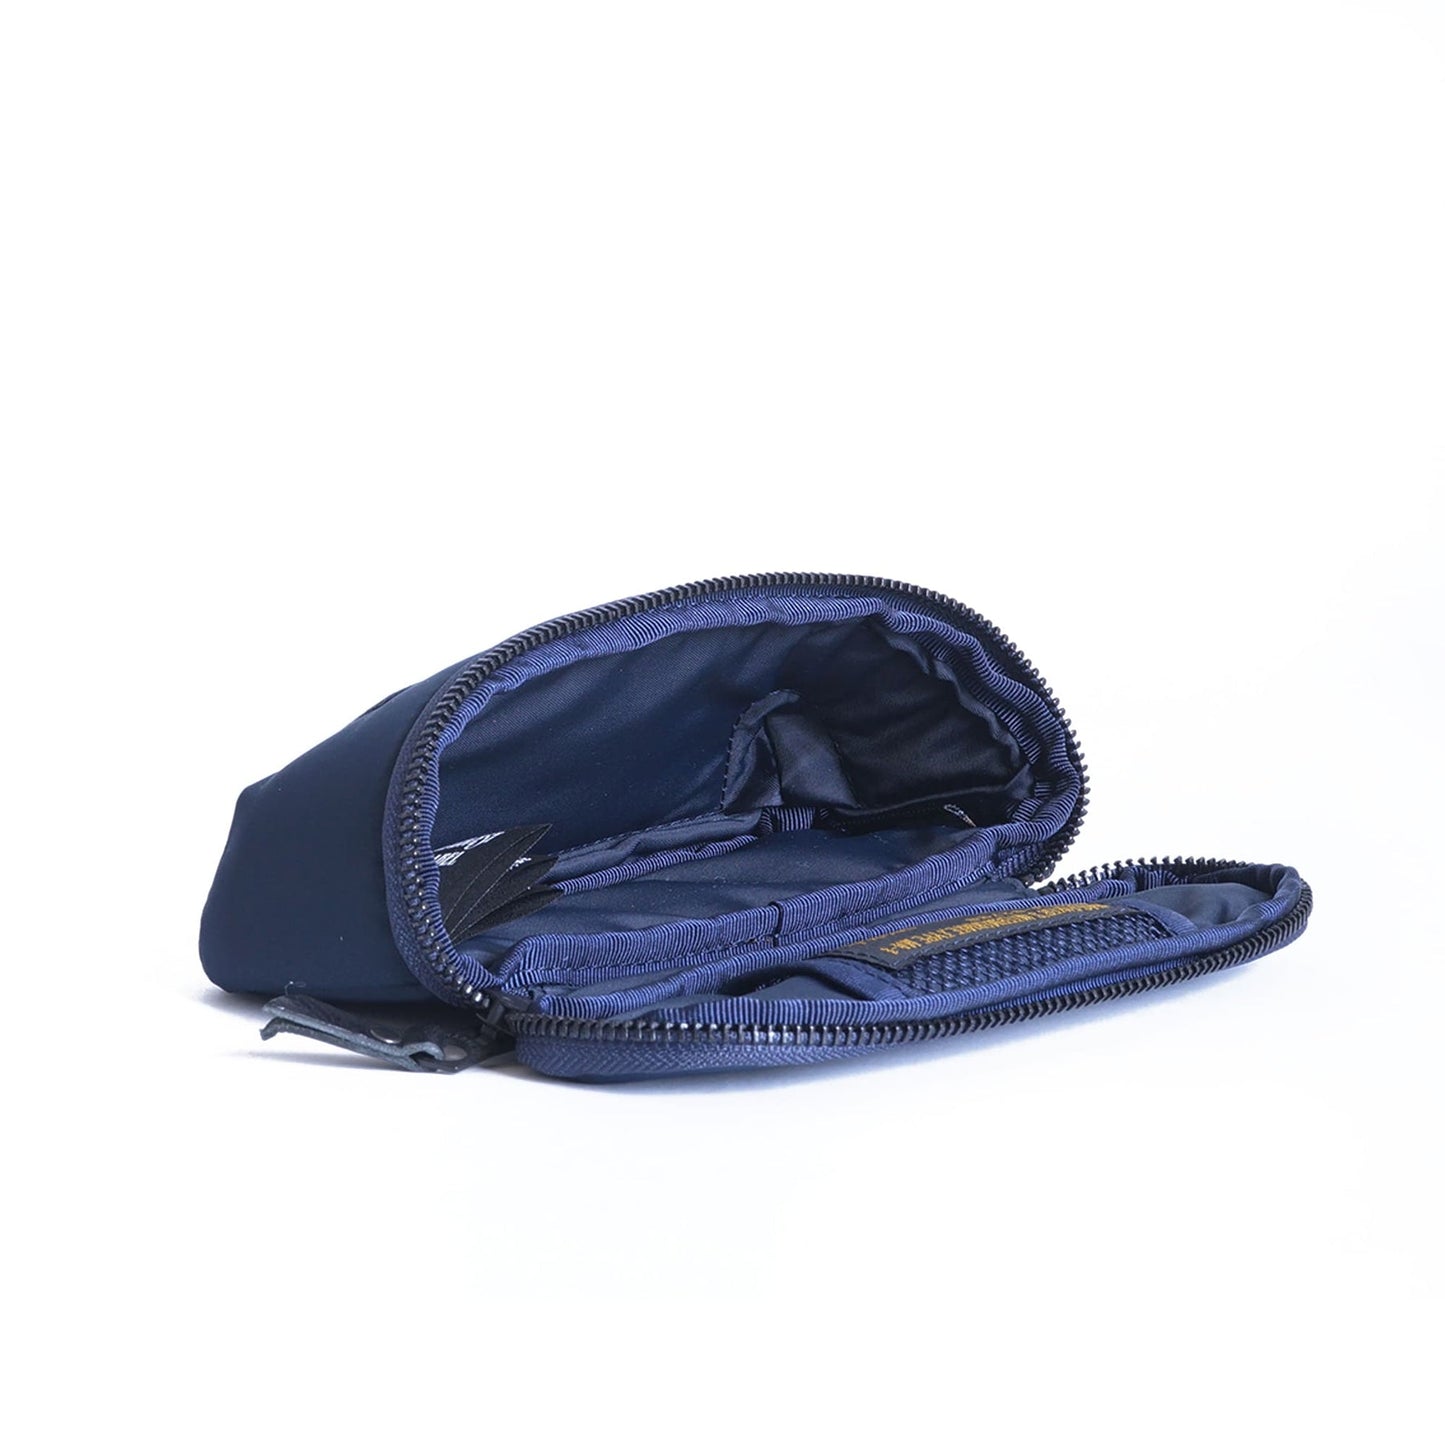 Harvest Label - Bag, Flyers Supply HSP-0173 Glasses Case Air Force Blue